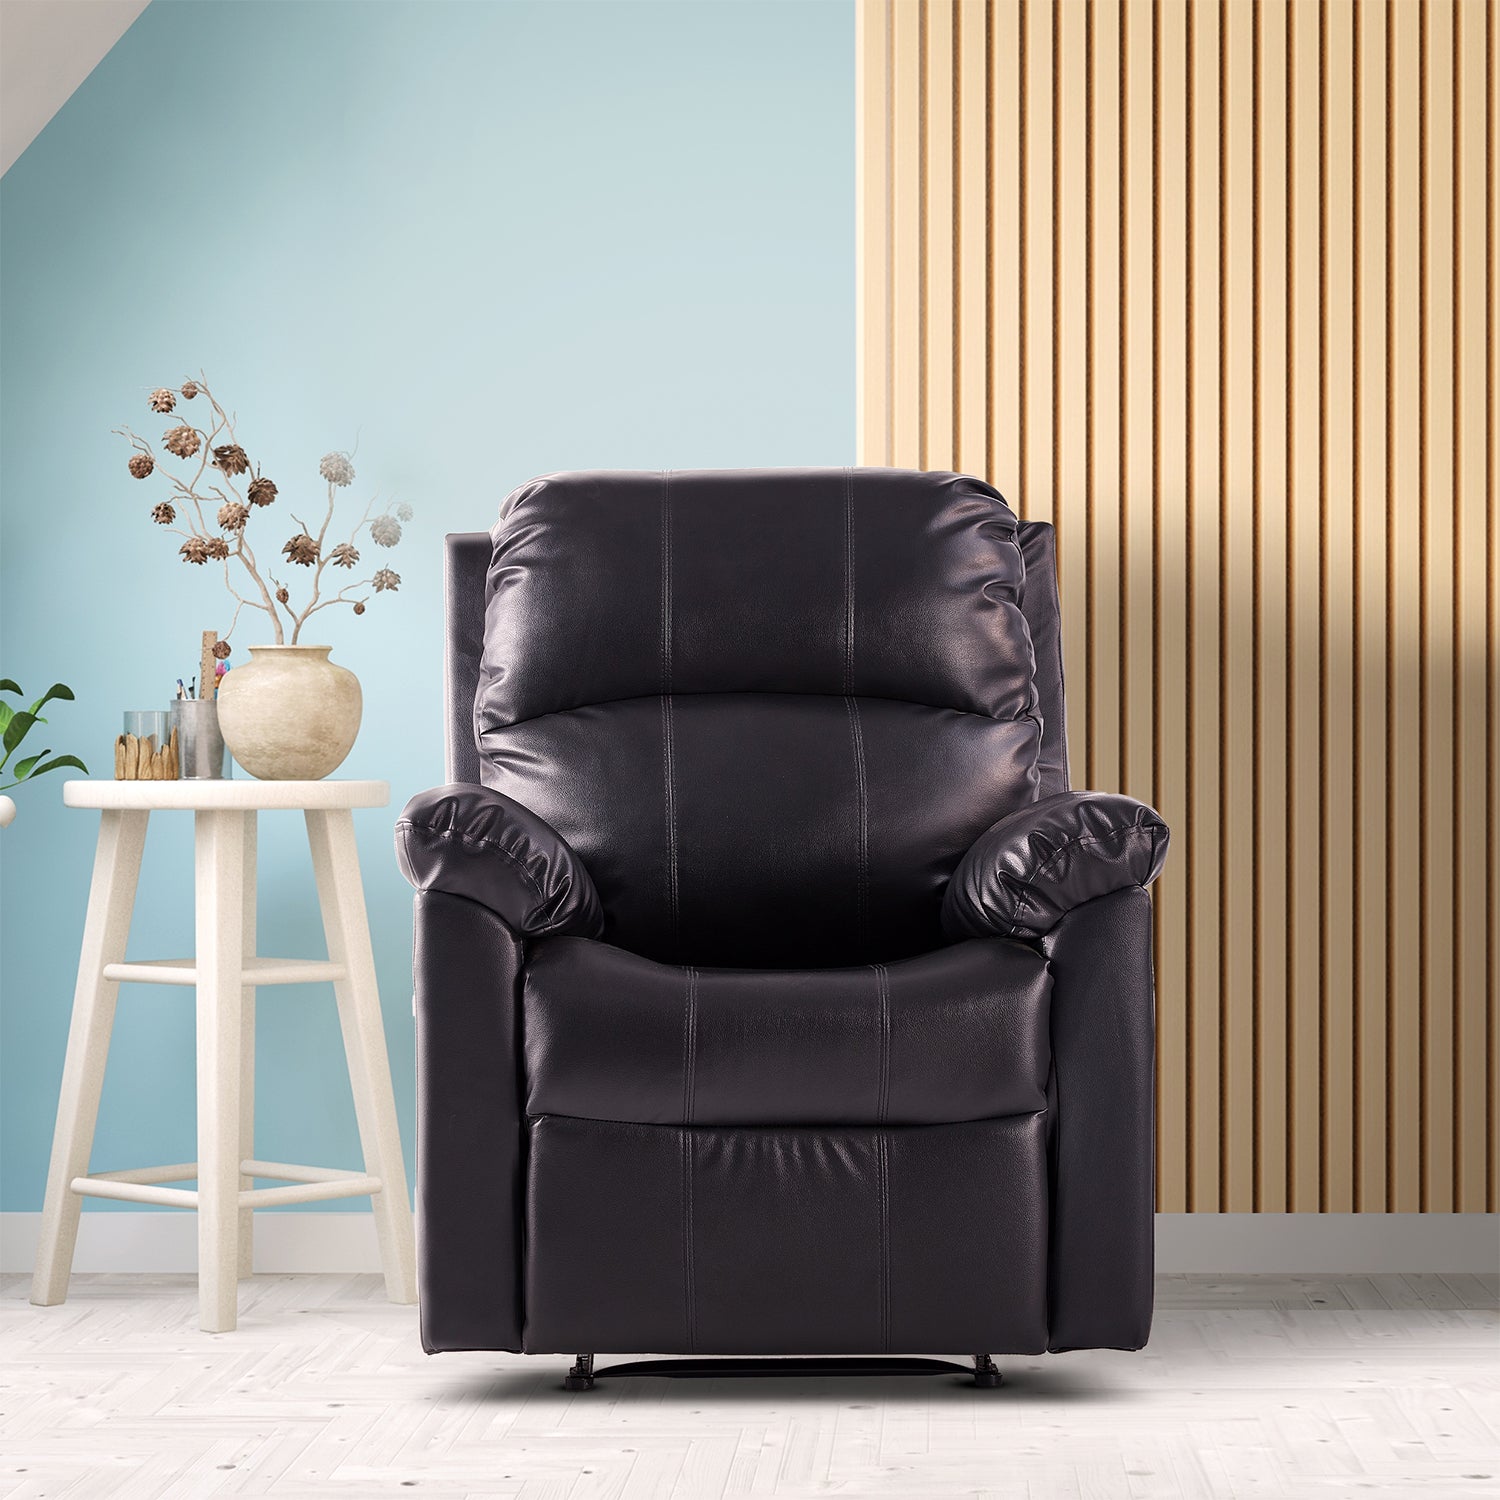 Darling Furniture Sofa Set Online At Best Upto 25 Cashback